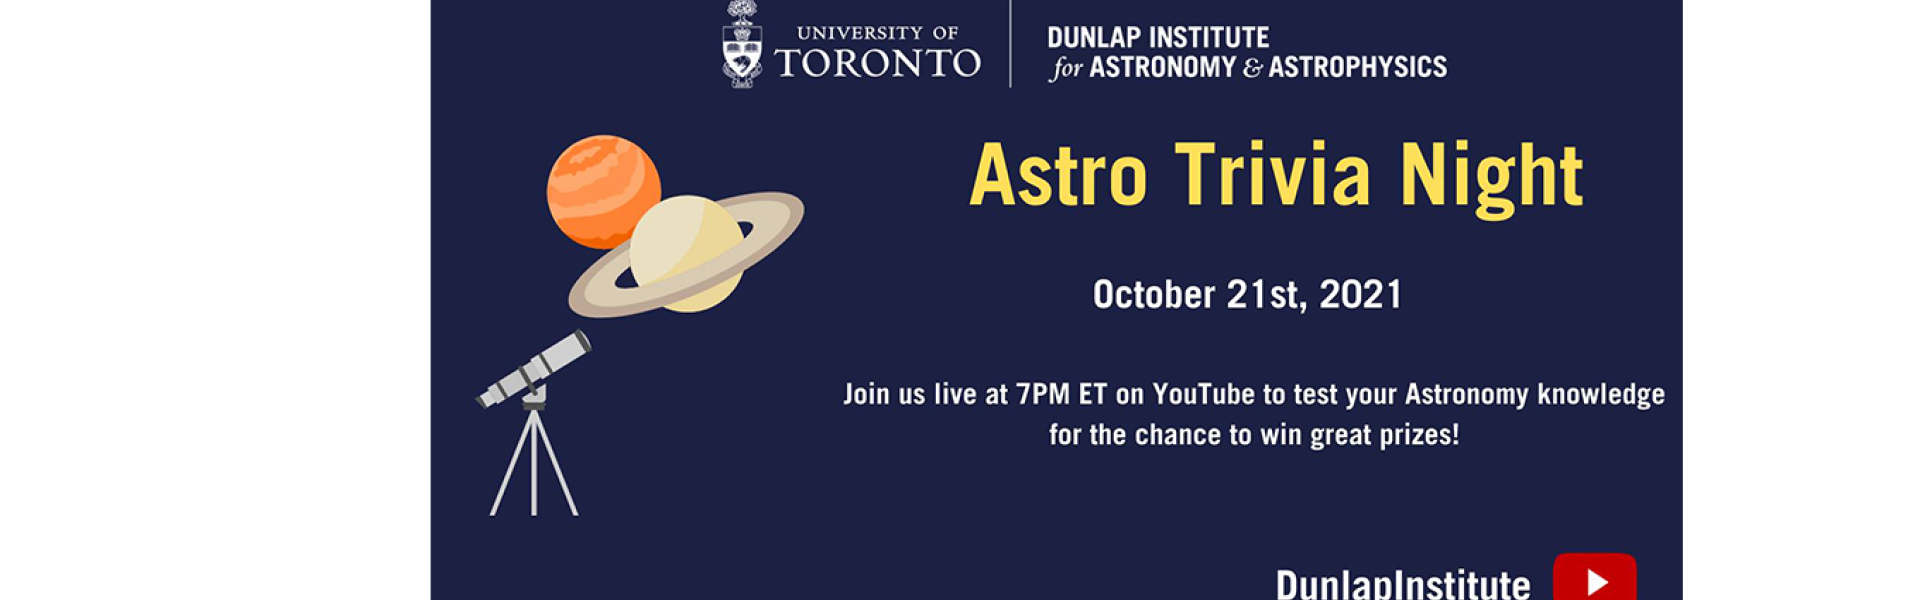 Astro Trivia Night - October 21